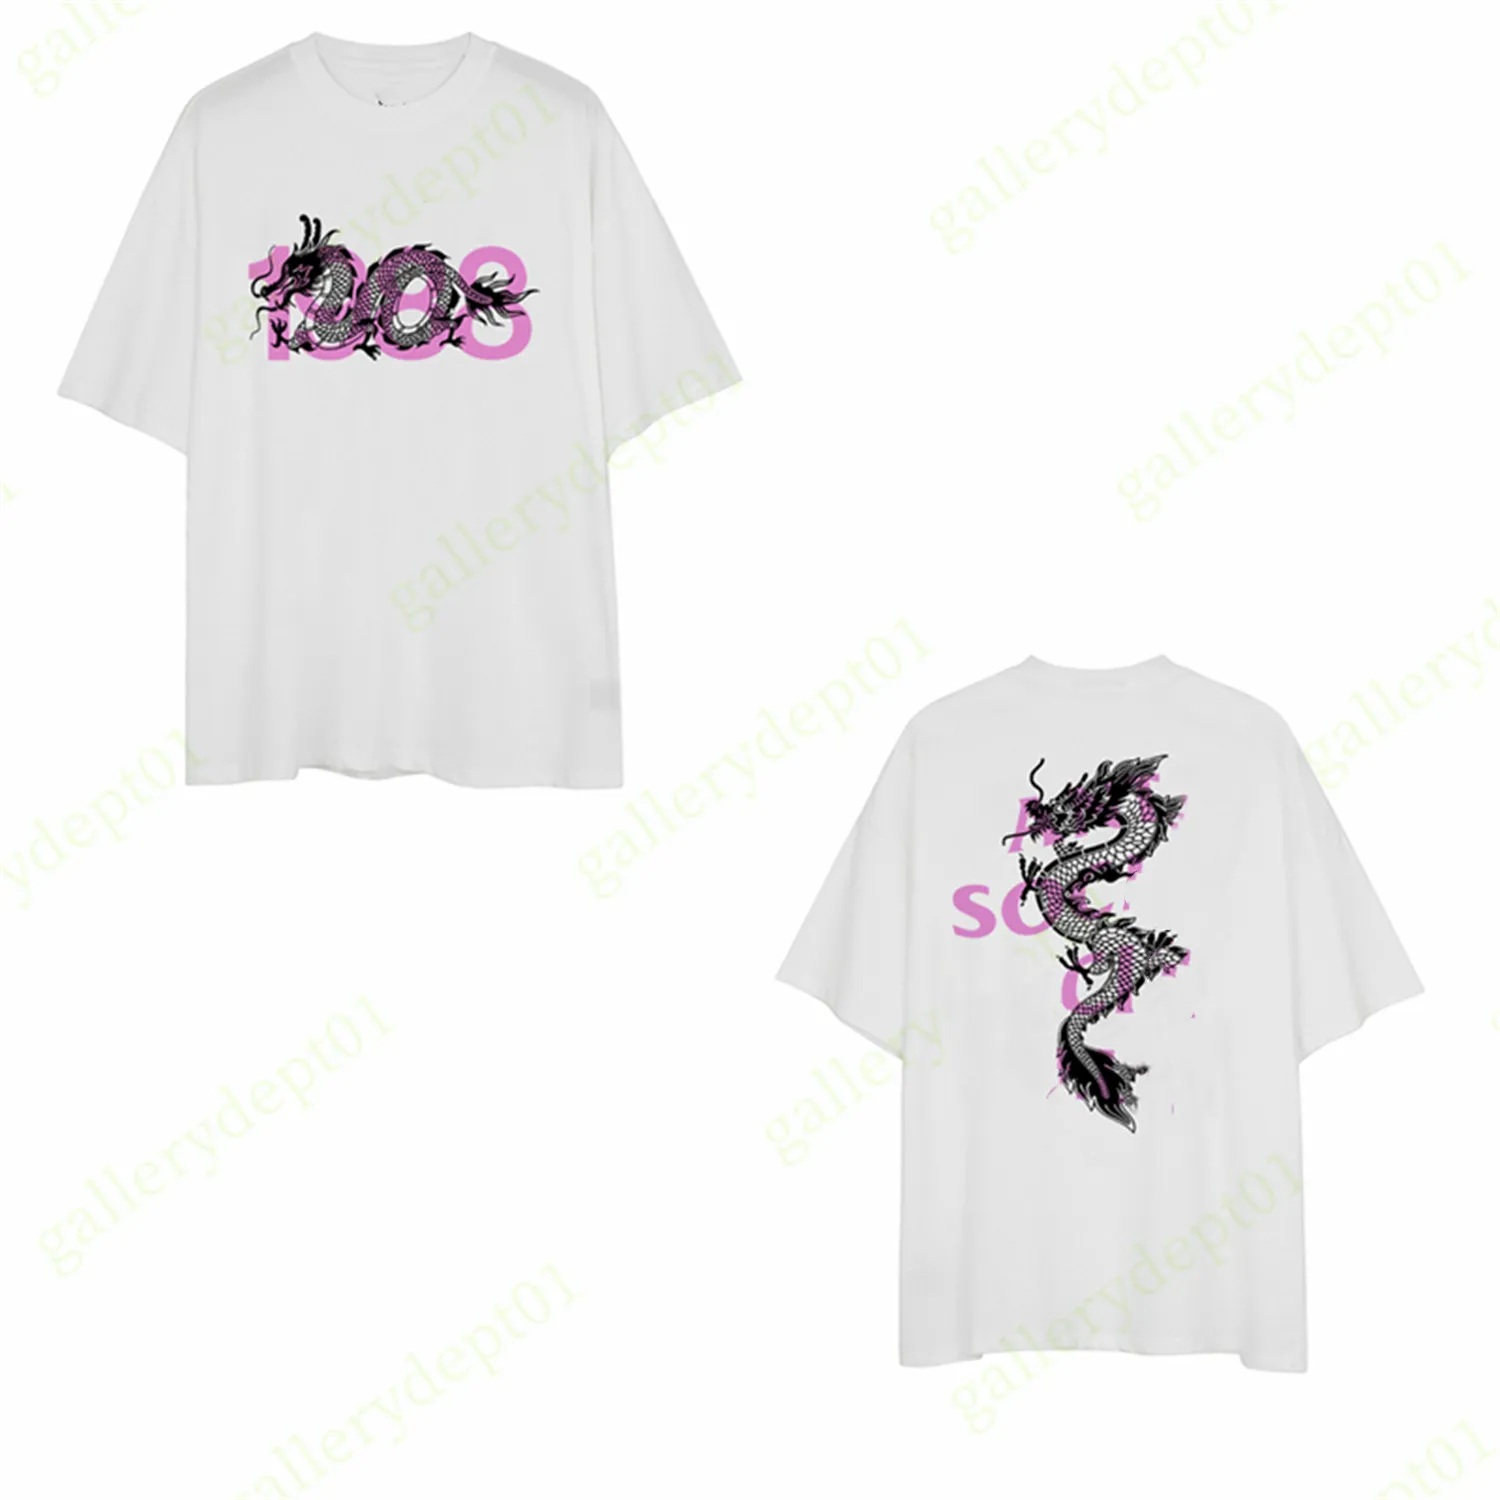 moda mens tshirt designer camisetas hip hop diversão impressão roupas camiseta gráfico tees cor alfabeto inglês mulheres camiseta de alta qualidade oversized fitre camisa reflexiva B